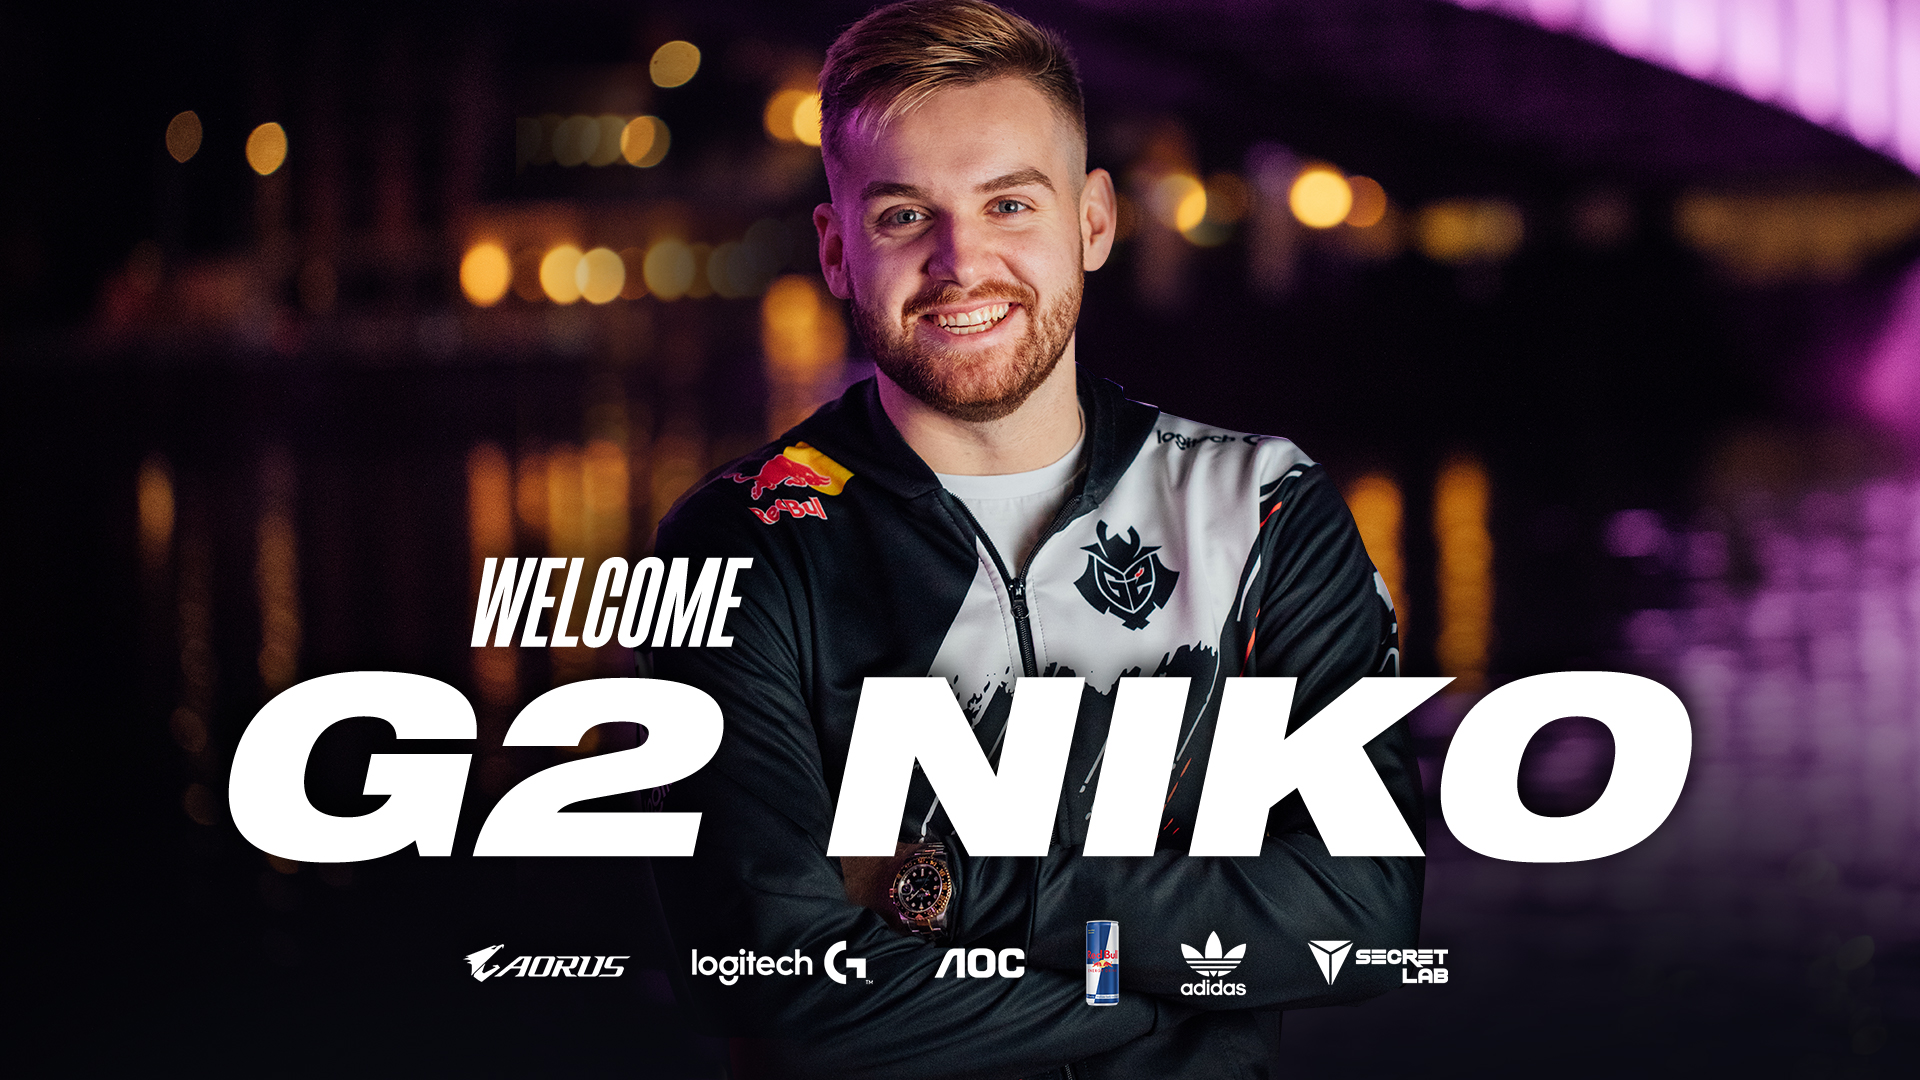 G2 Esports on Twitter: "Welcome @G2NiKo 📰: https://t.co/7OJIFaWiJ1  https://t.co/fA7CjdZN3d" / Twitter